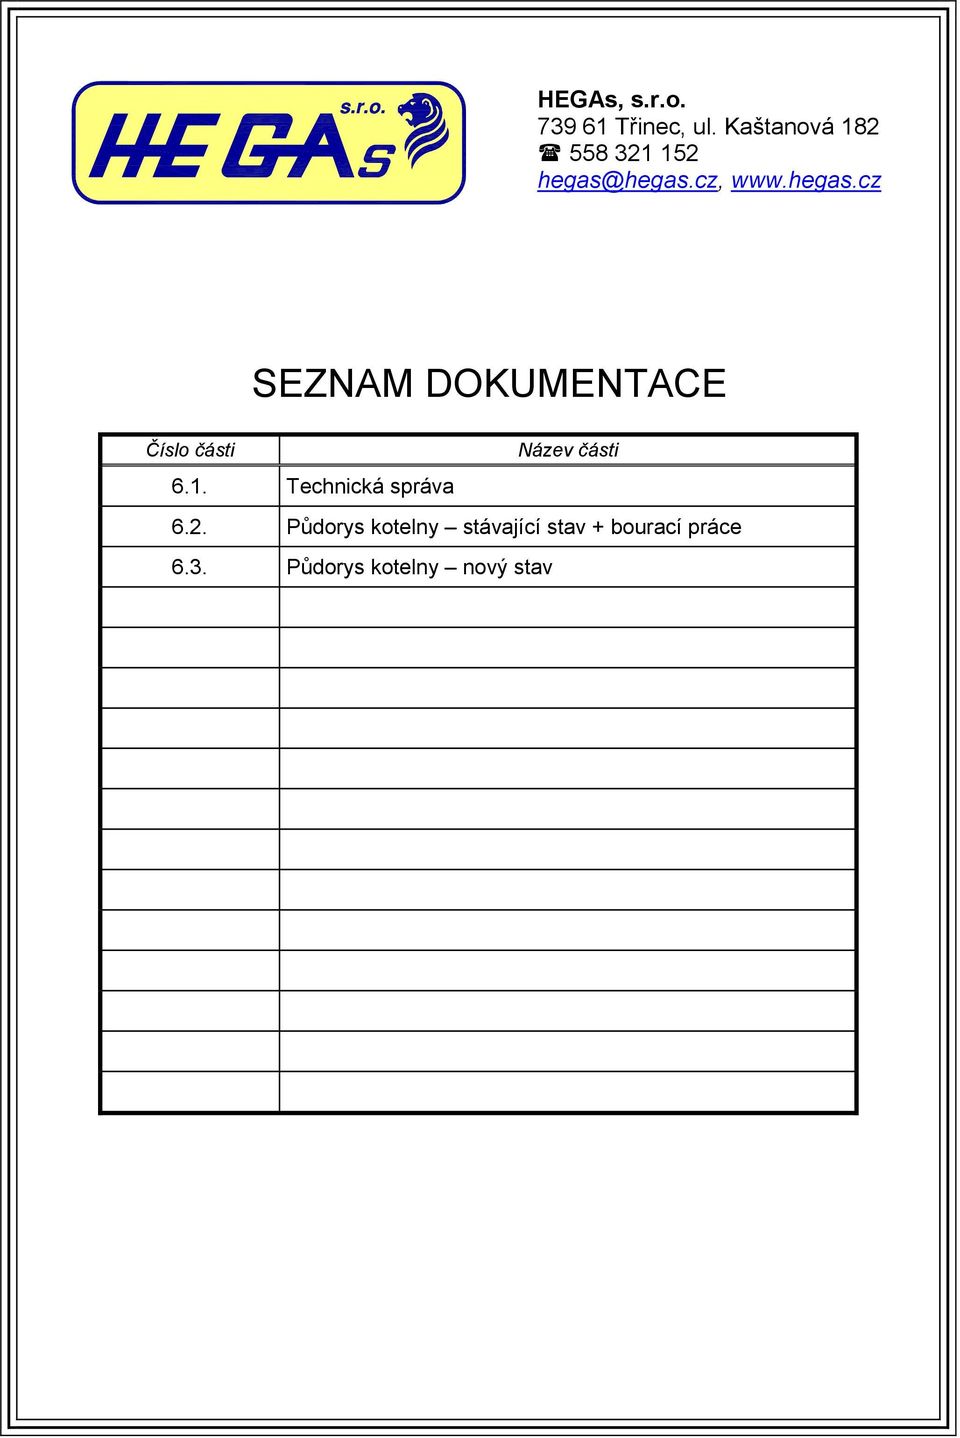 hegas.cz, www.hegas.cz SEZNAM DOKUMENTACE Číslo části Název části 6.